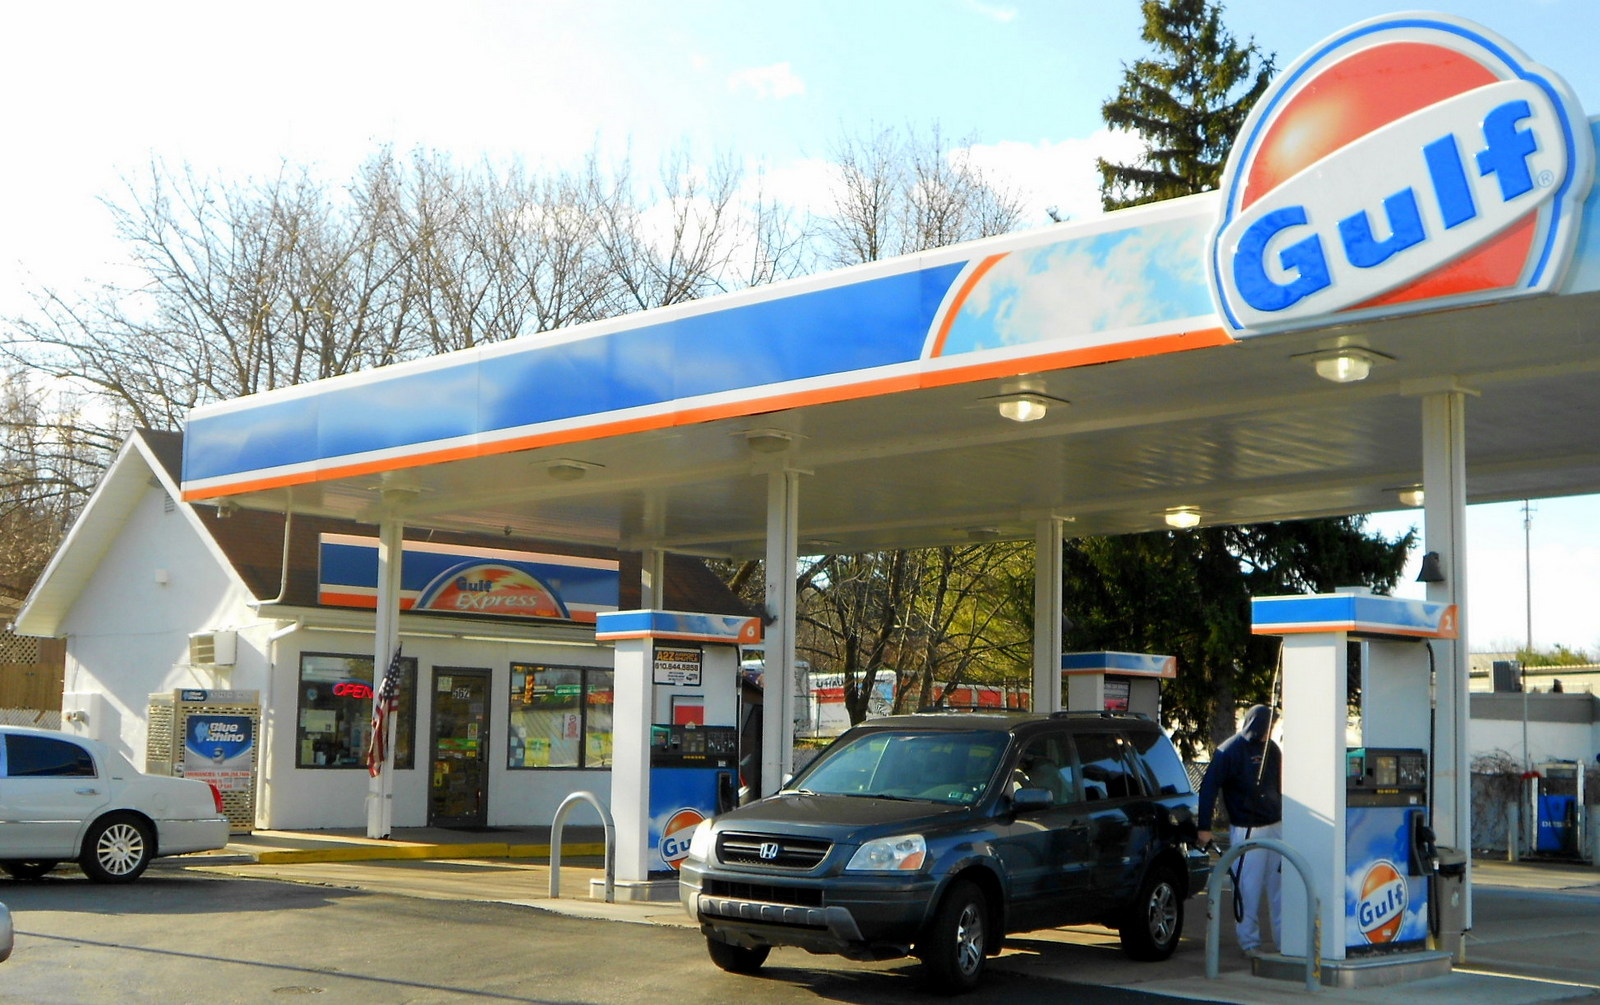  GULF invertirá 100 mdd en sus primeras gasolineras